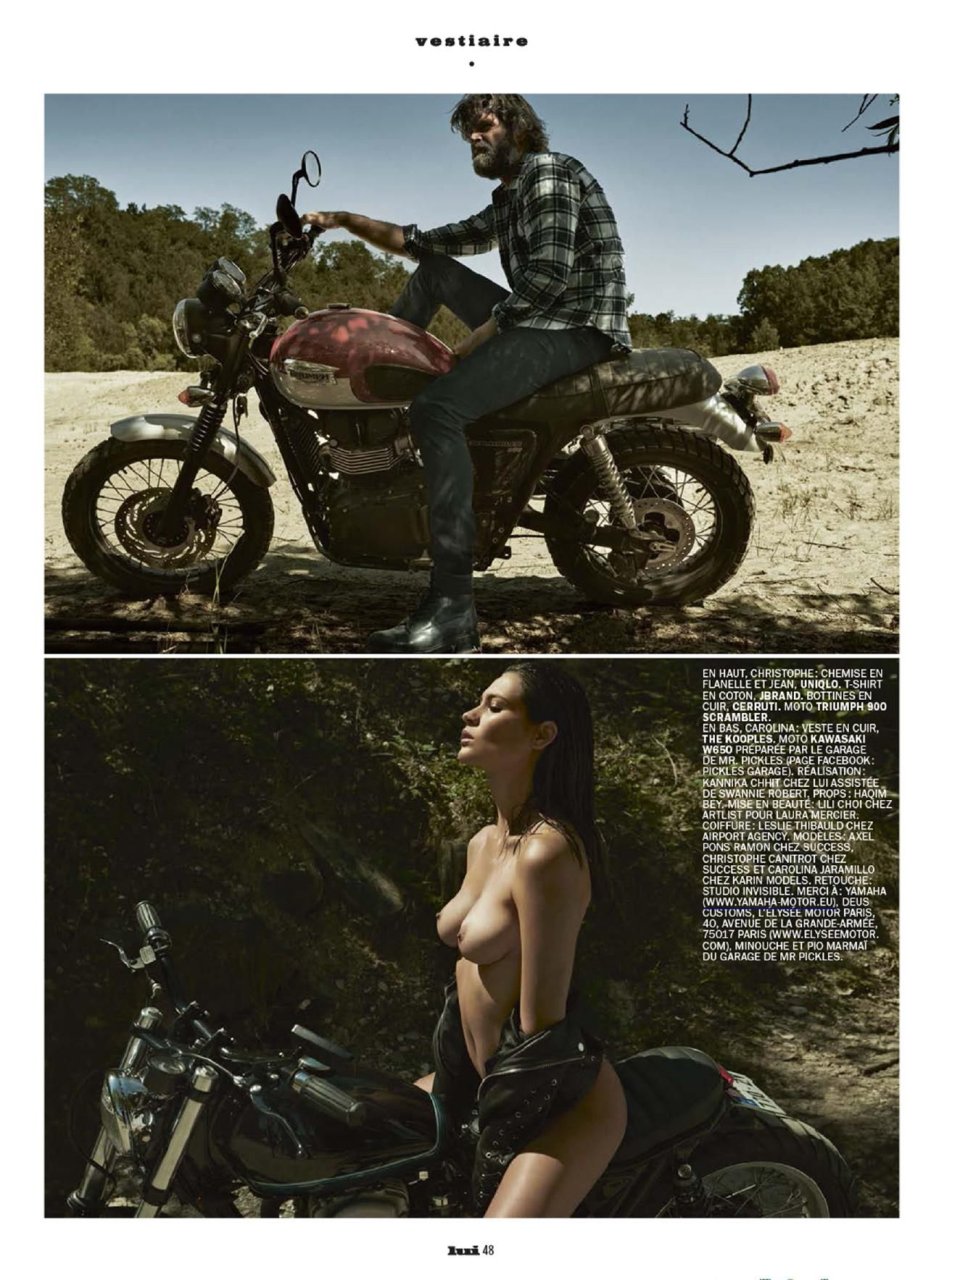 Karol Jaramillo Nude & Sexy (48 Photos)